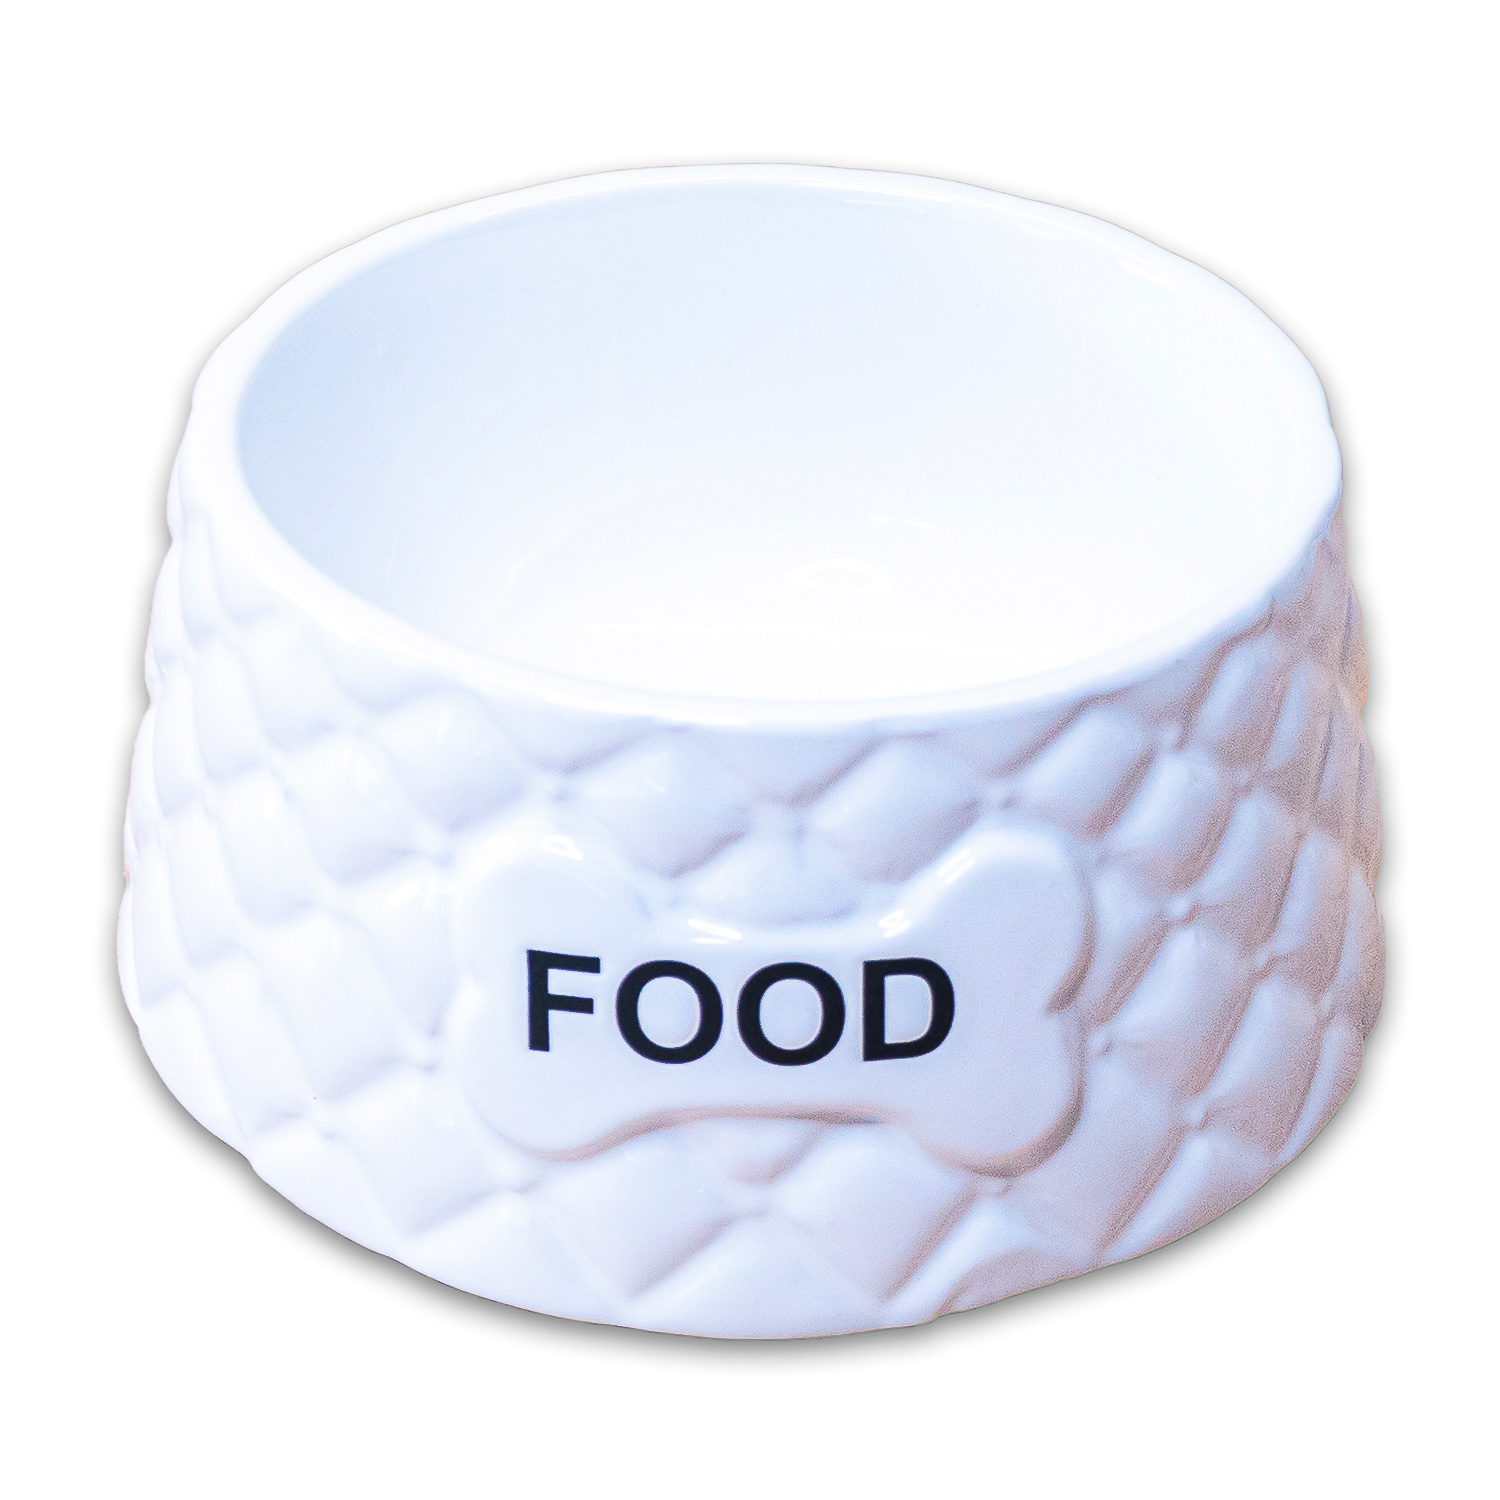 КерамикАрт КерамикАрт миска Food  керамическая, белая (680 мл) керамикарт керамикарт домик бургер для грызунов 8х8х9 см